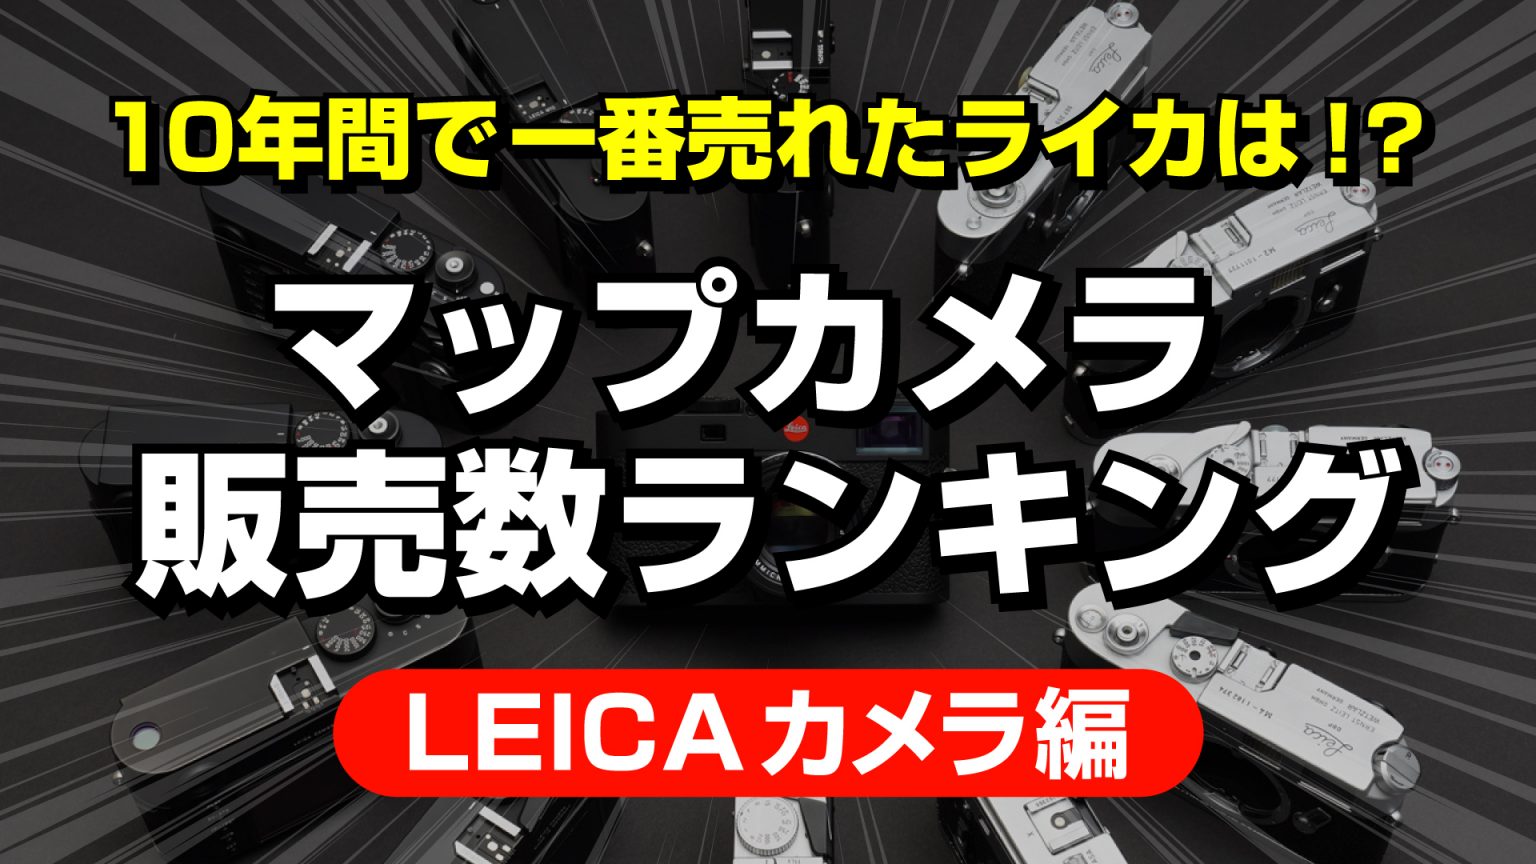 【Leica Boutique 10th】Leica製品10年間売上ランキング（カメラ編）